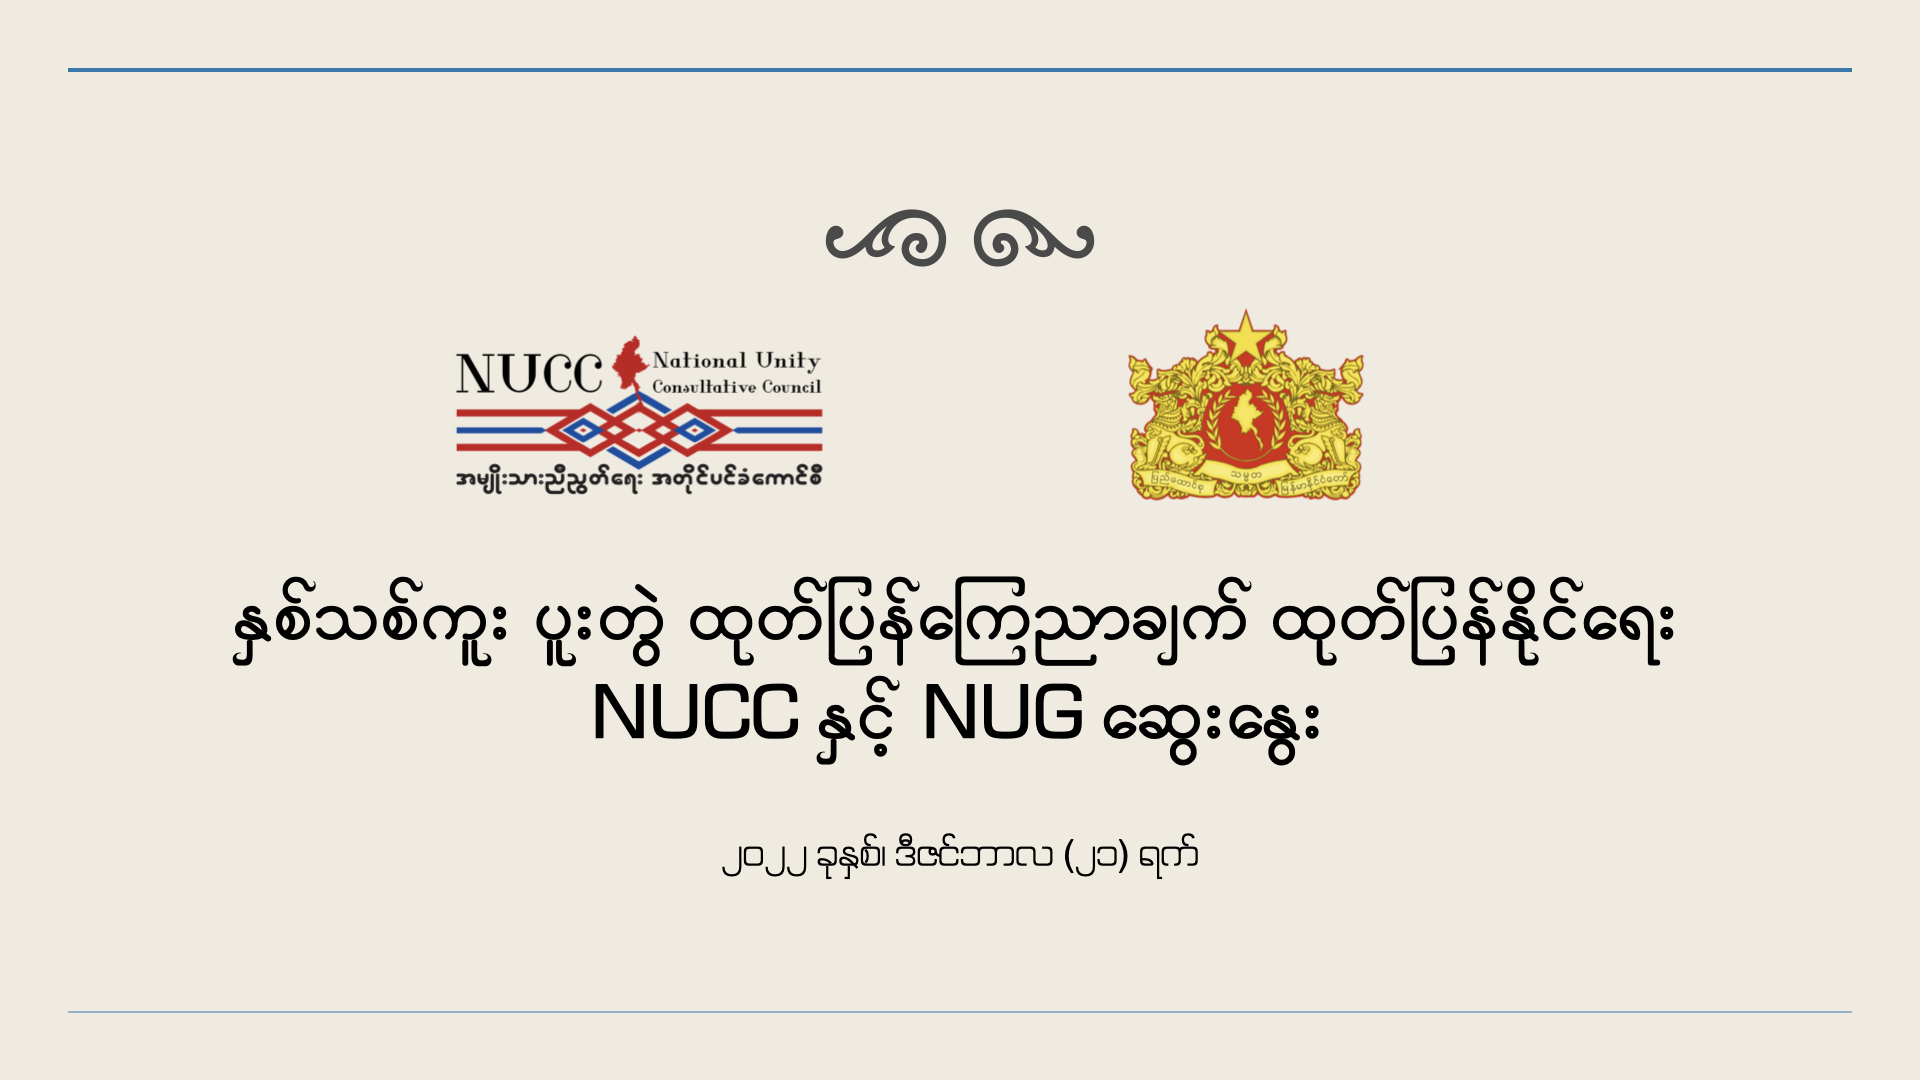 နှစ်သစ်ကူး ပူးတွဲ ထုတ်ပြန်ကြေညာချက် ထုတ်ပြန်နိုင်ရေး NUCC နှင့် NUG ဆွေးနွေး